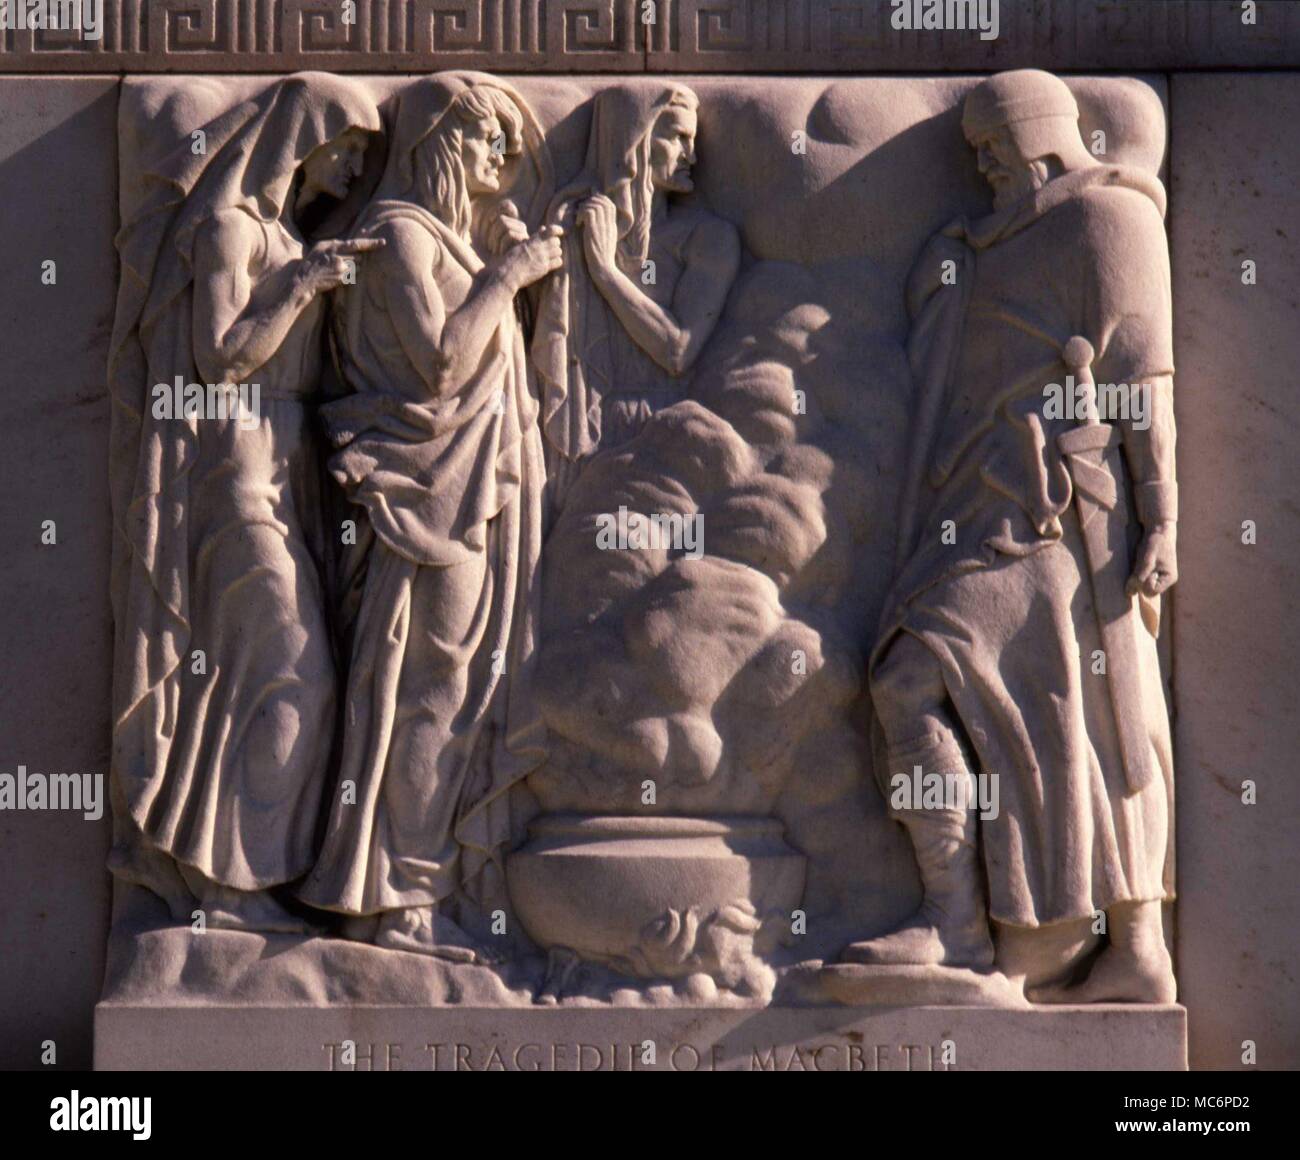 Die drei 'wierd Schwestern', die Macbeth auf der blastd Heide treffen. Skulptur auf der Fassade der Folger Shakespeaare Memorial Library, Washington DC. Von John Gregory, 1932 geformt. Stockfoto